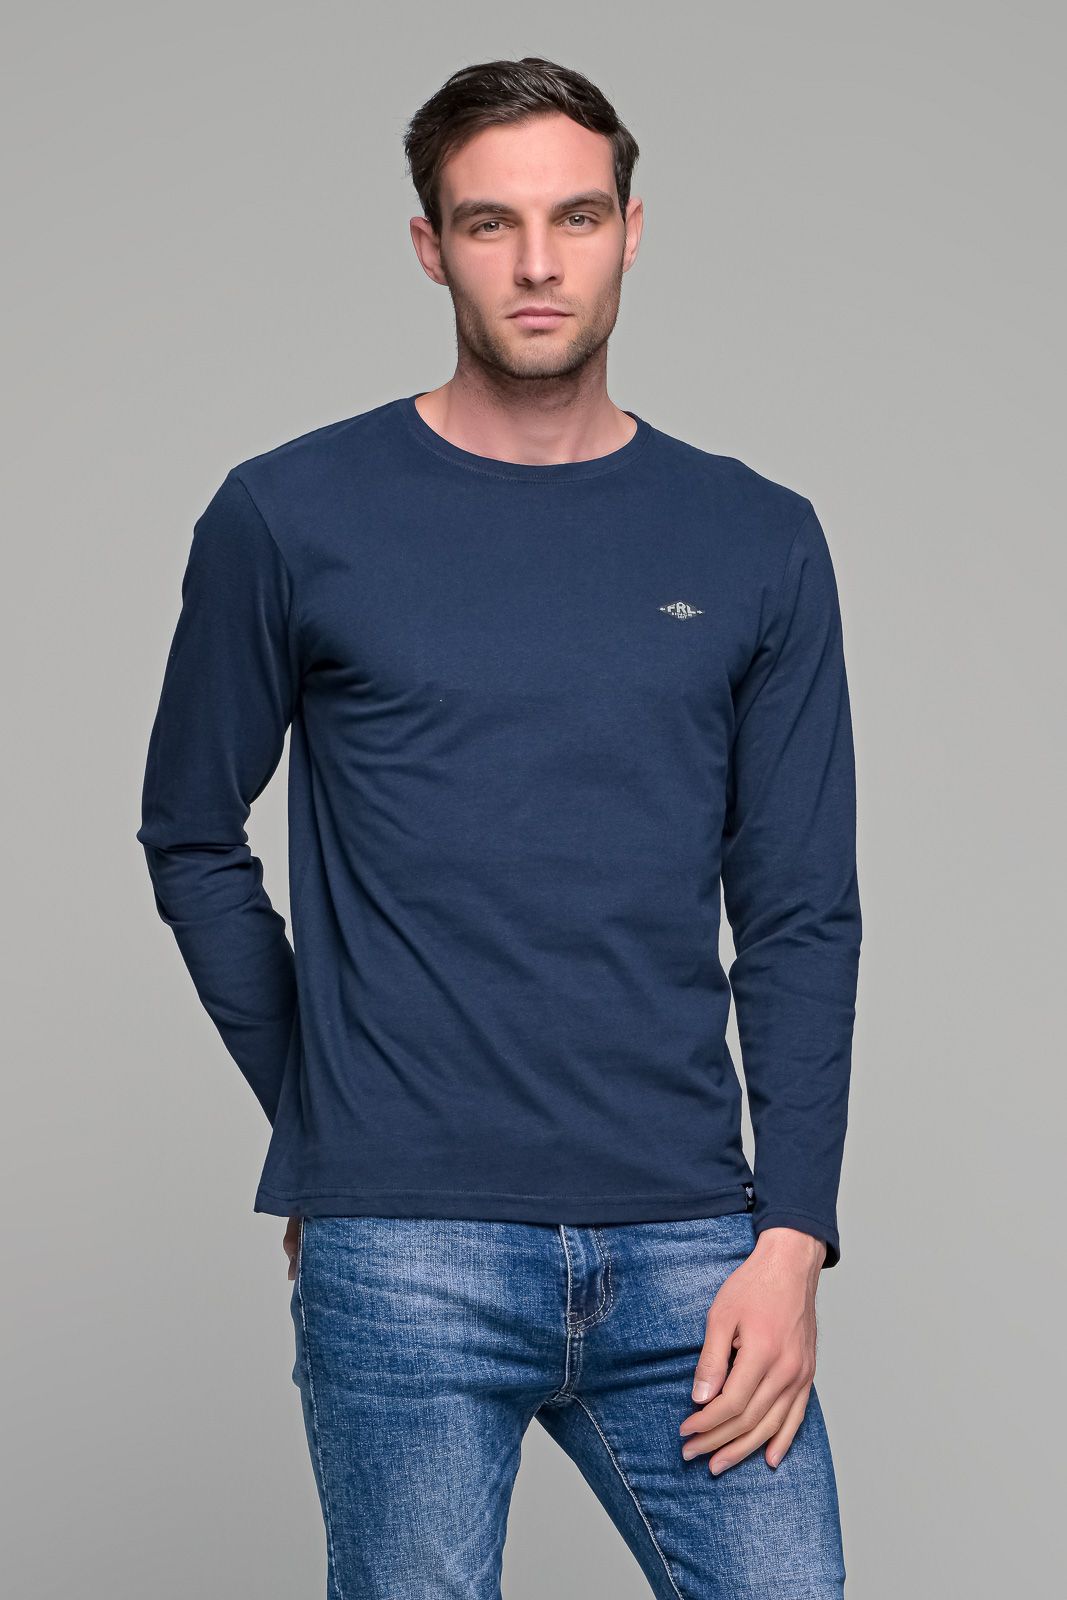 Μπλε ανδρική μακρυμάνικη μπλούζα με στάμπα FRL